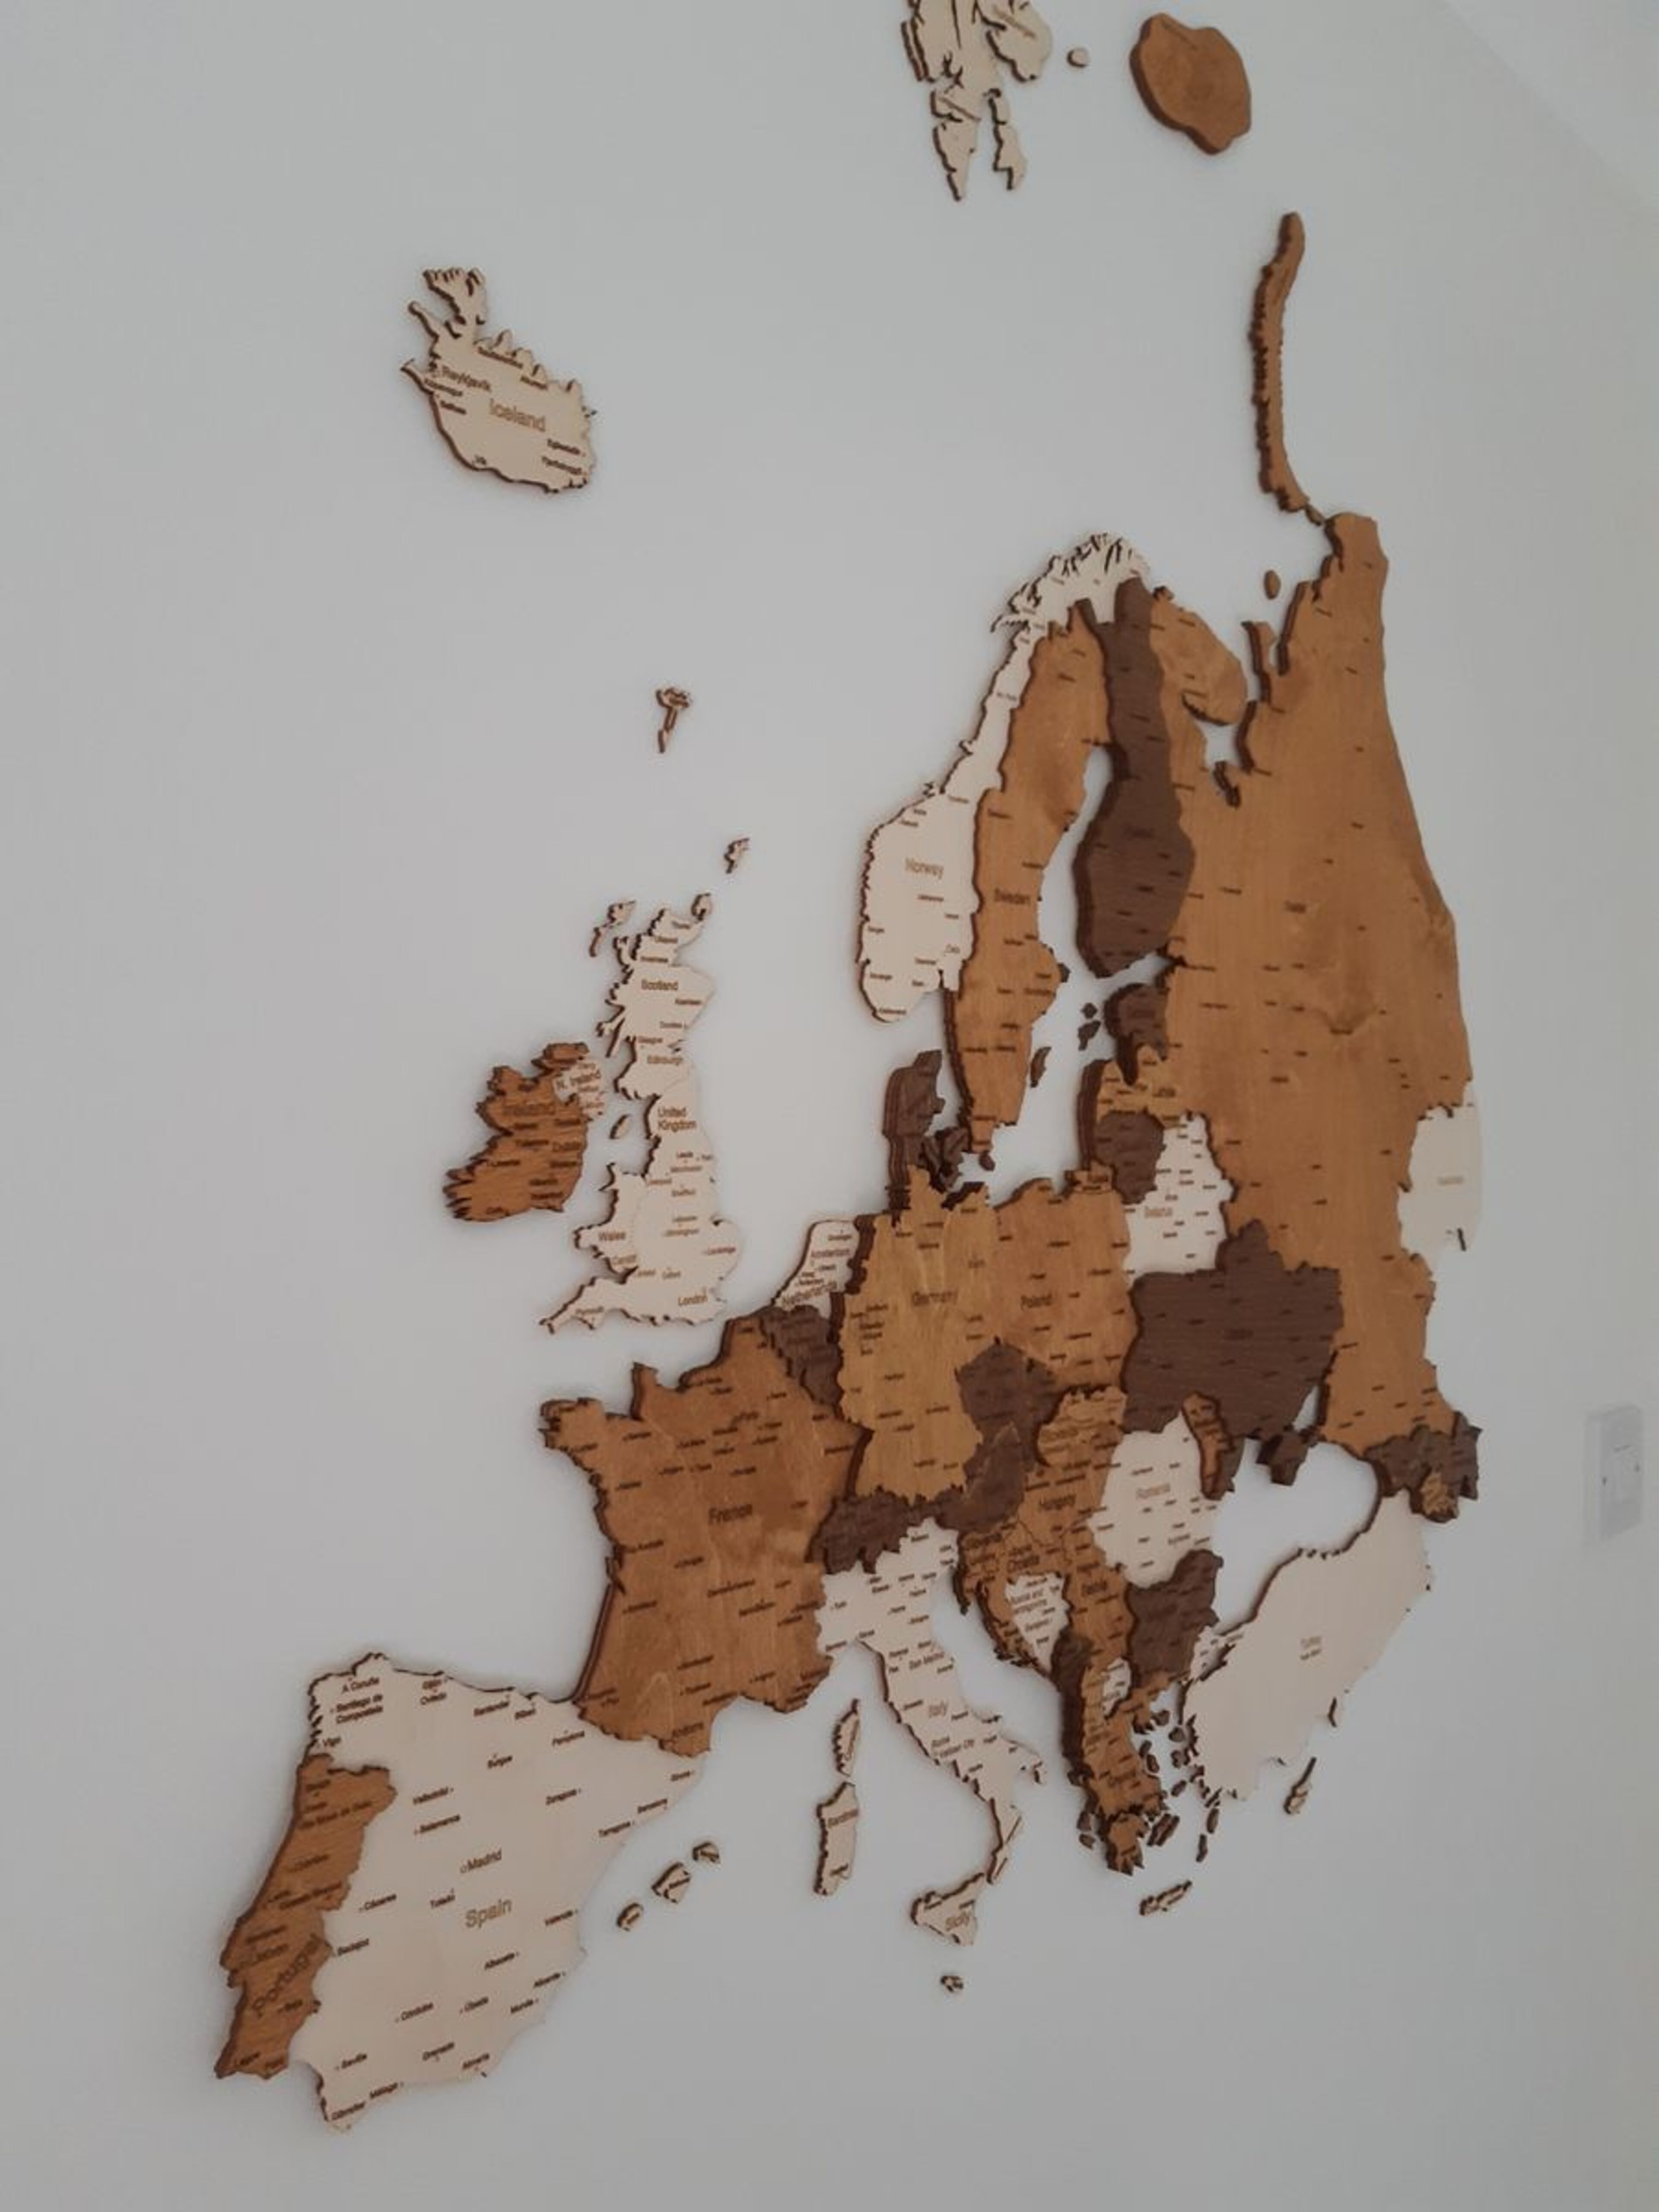 Reseña de Mapa de pared de madera de Europa - imagen de Matthew